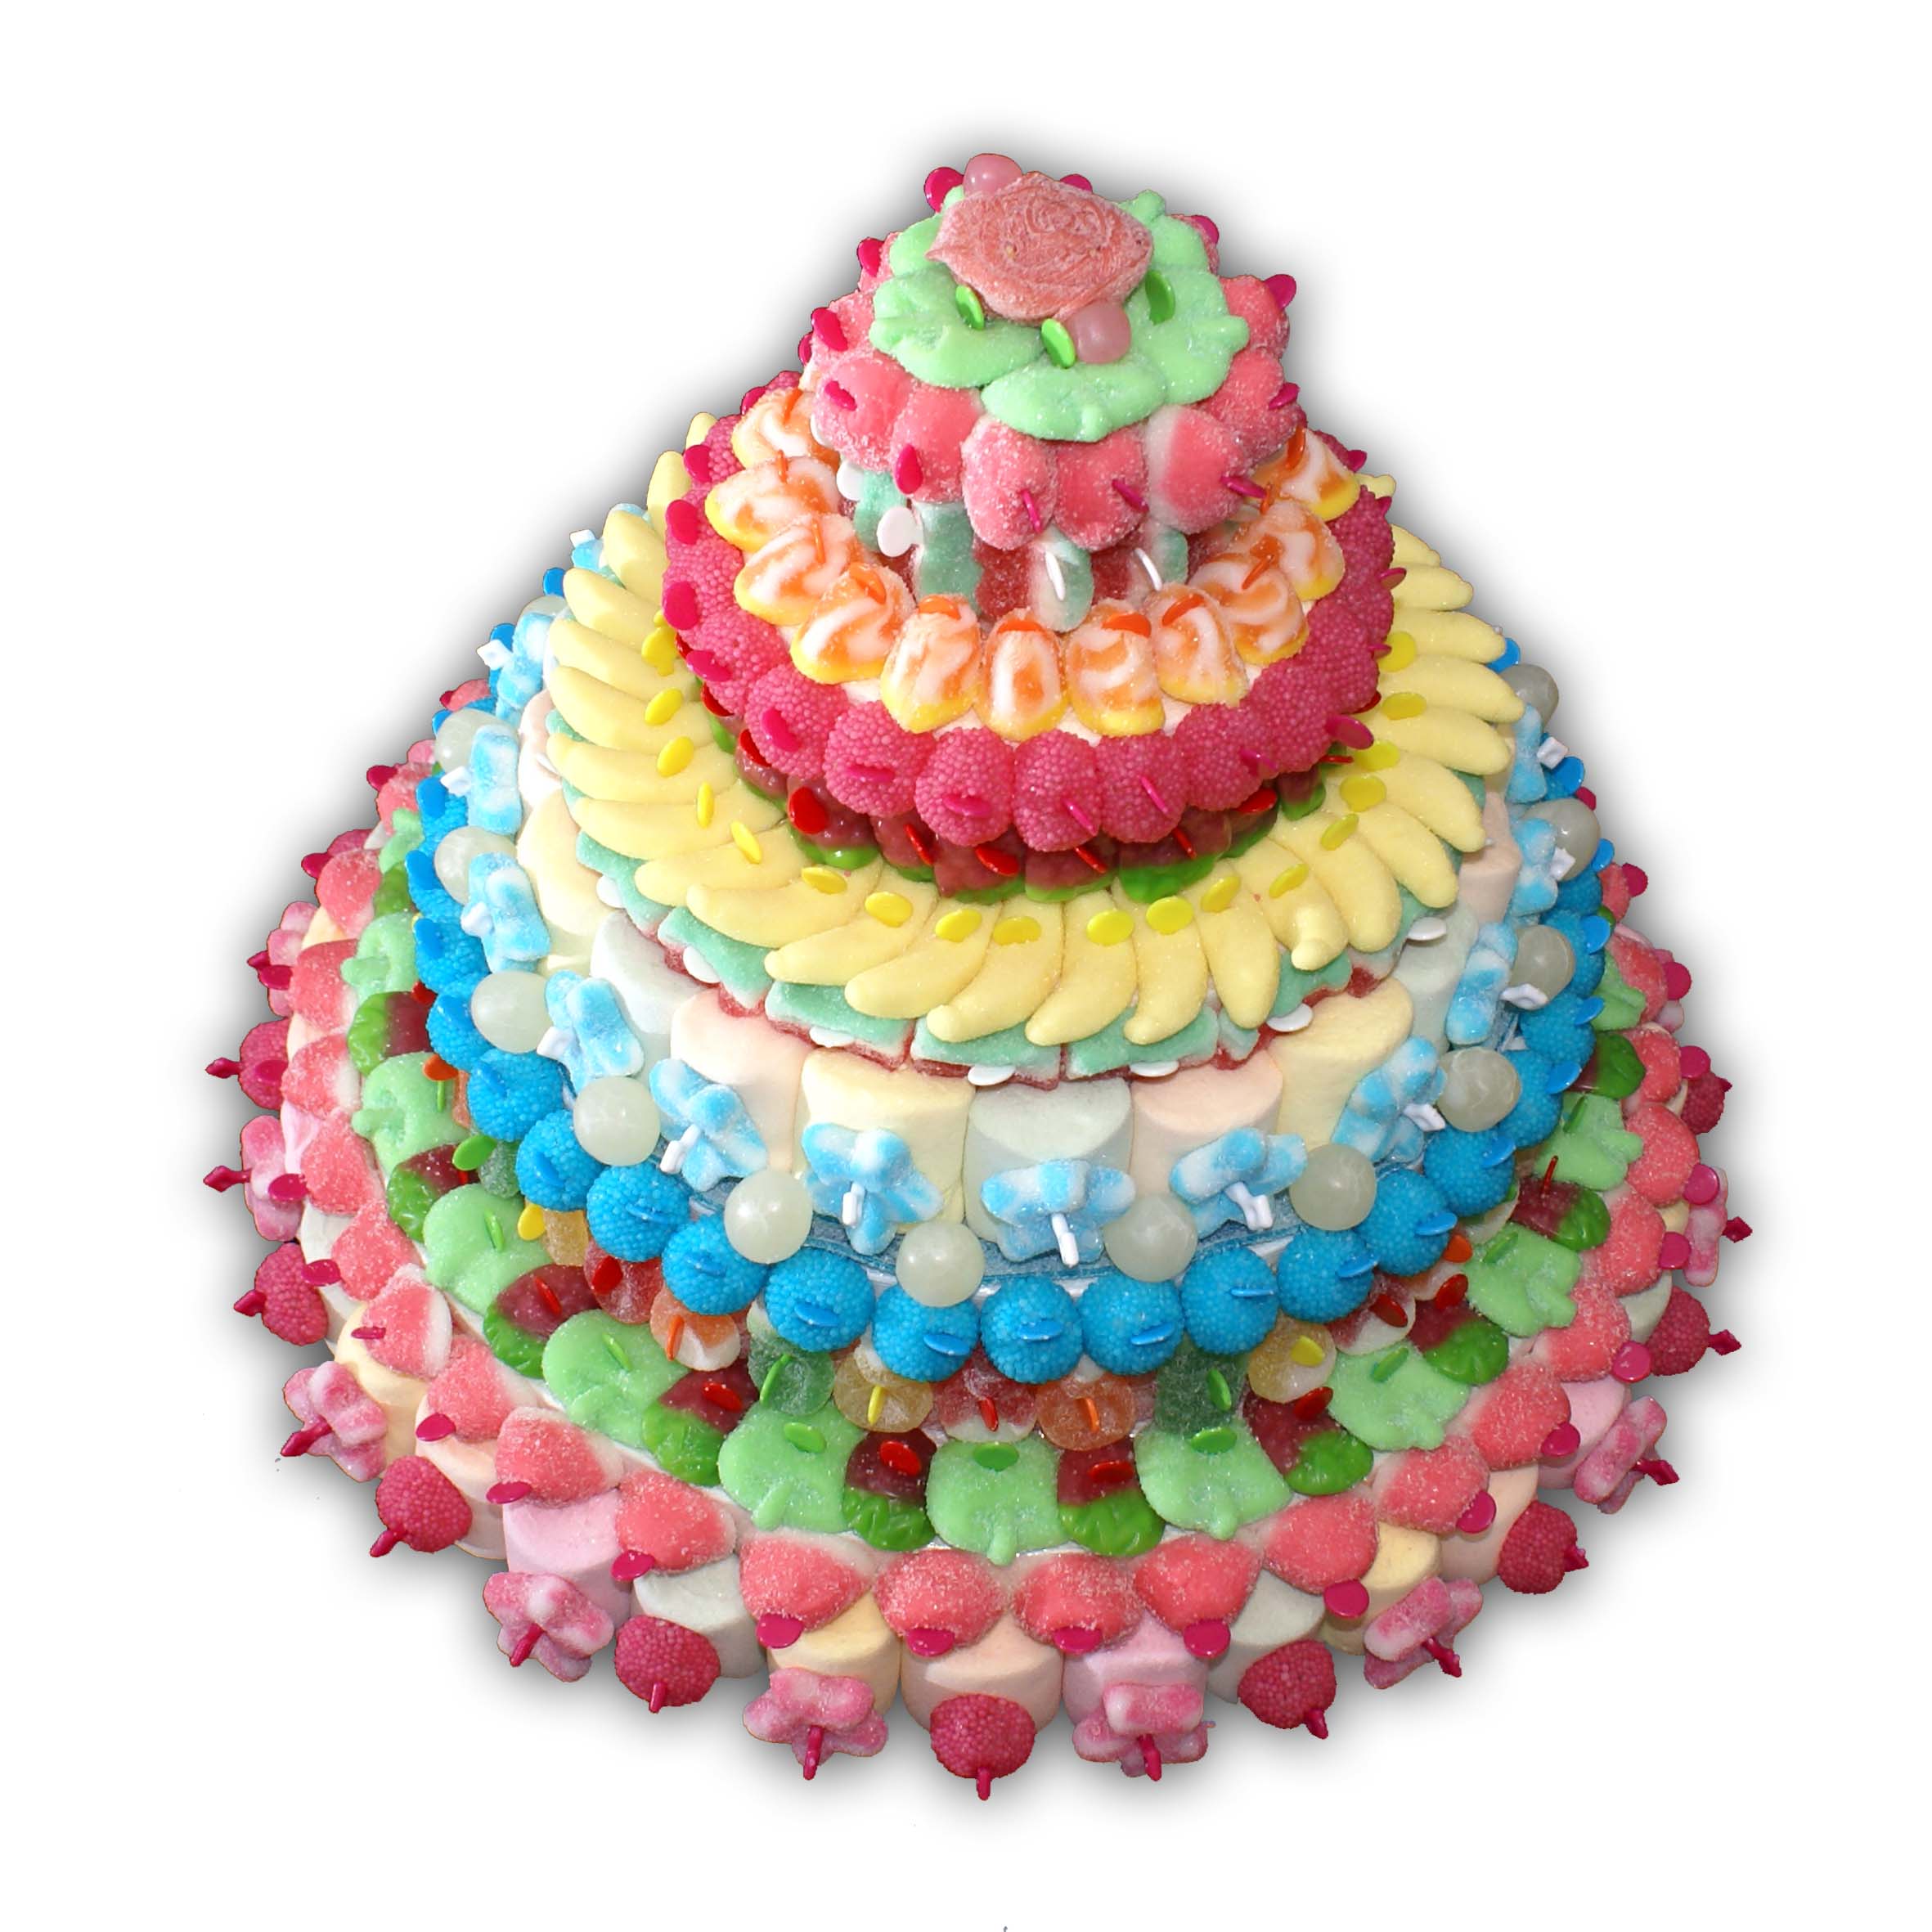 Comment faire un gâteau en bonbons - Bonbons du Ried